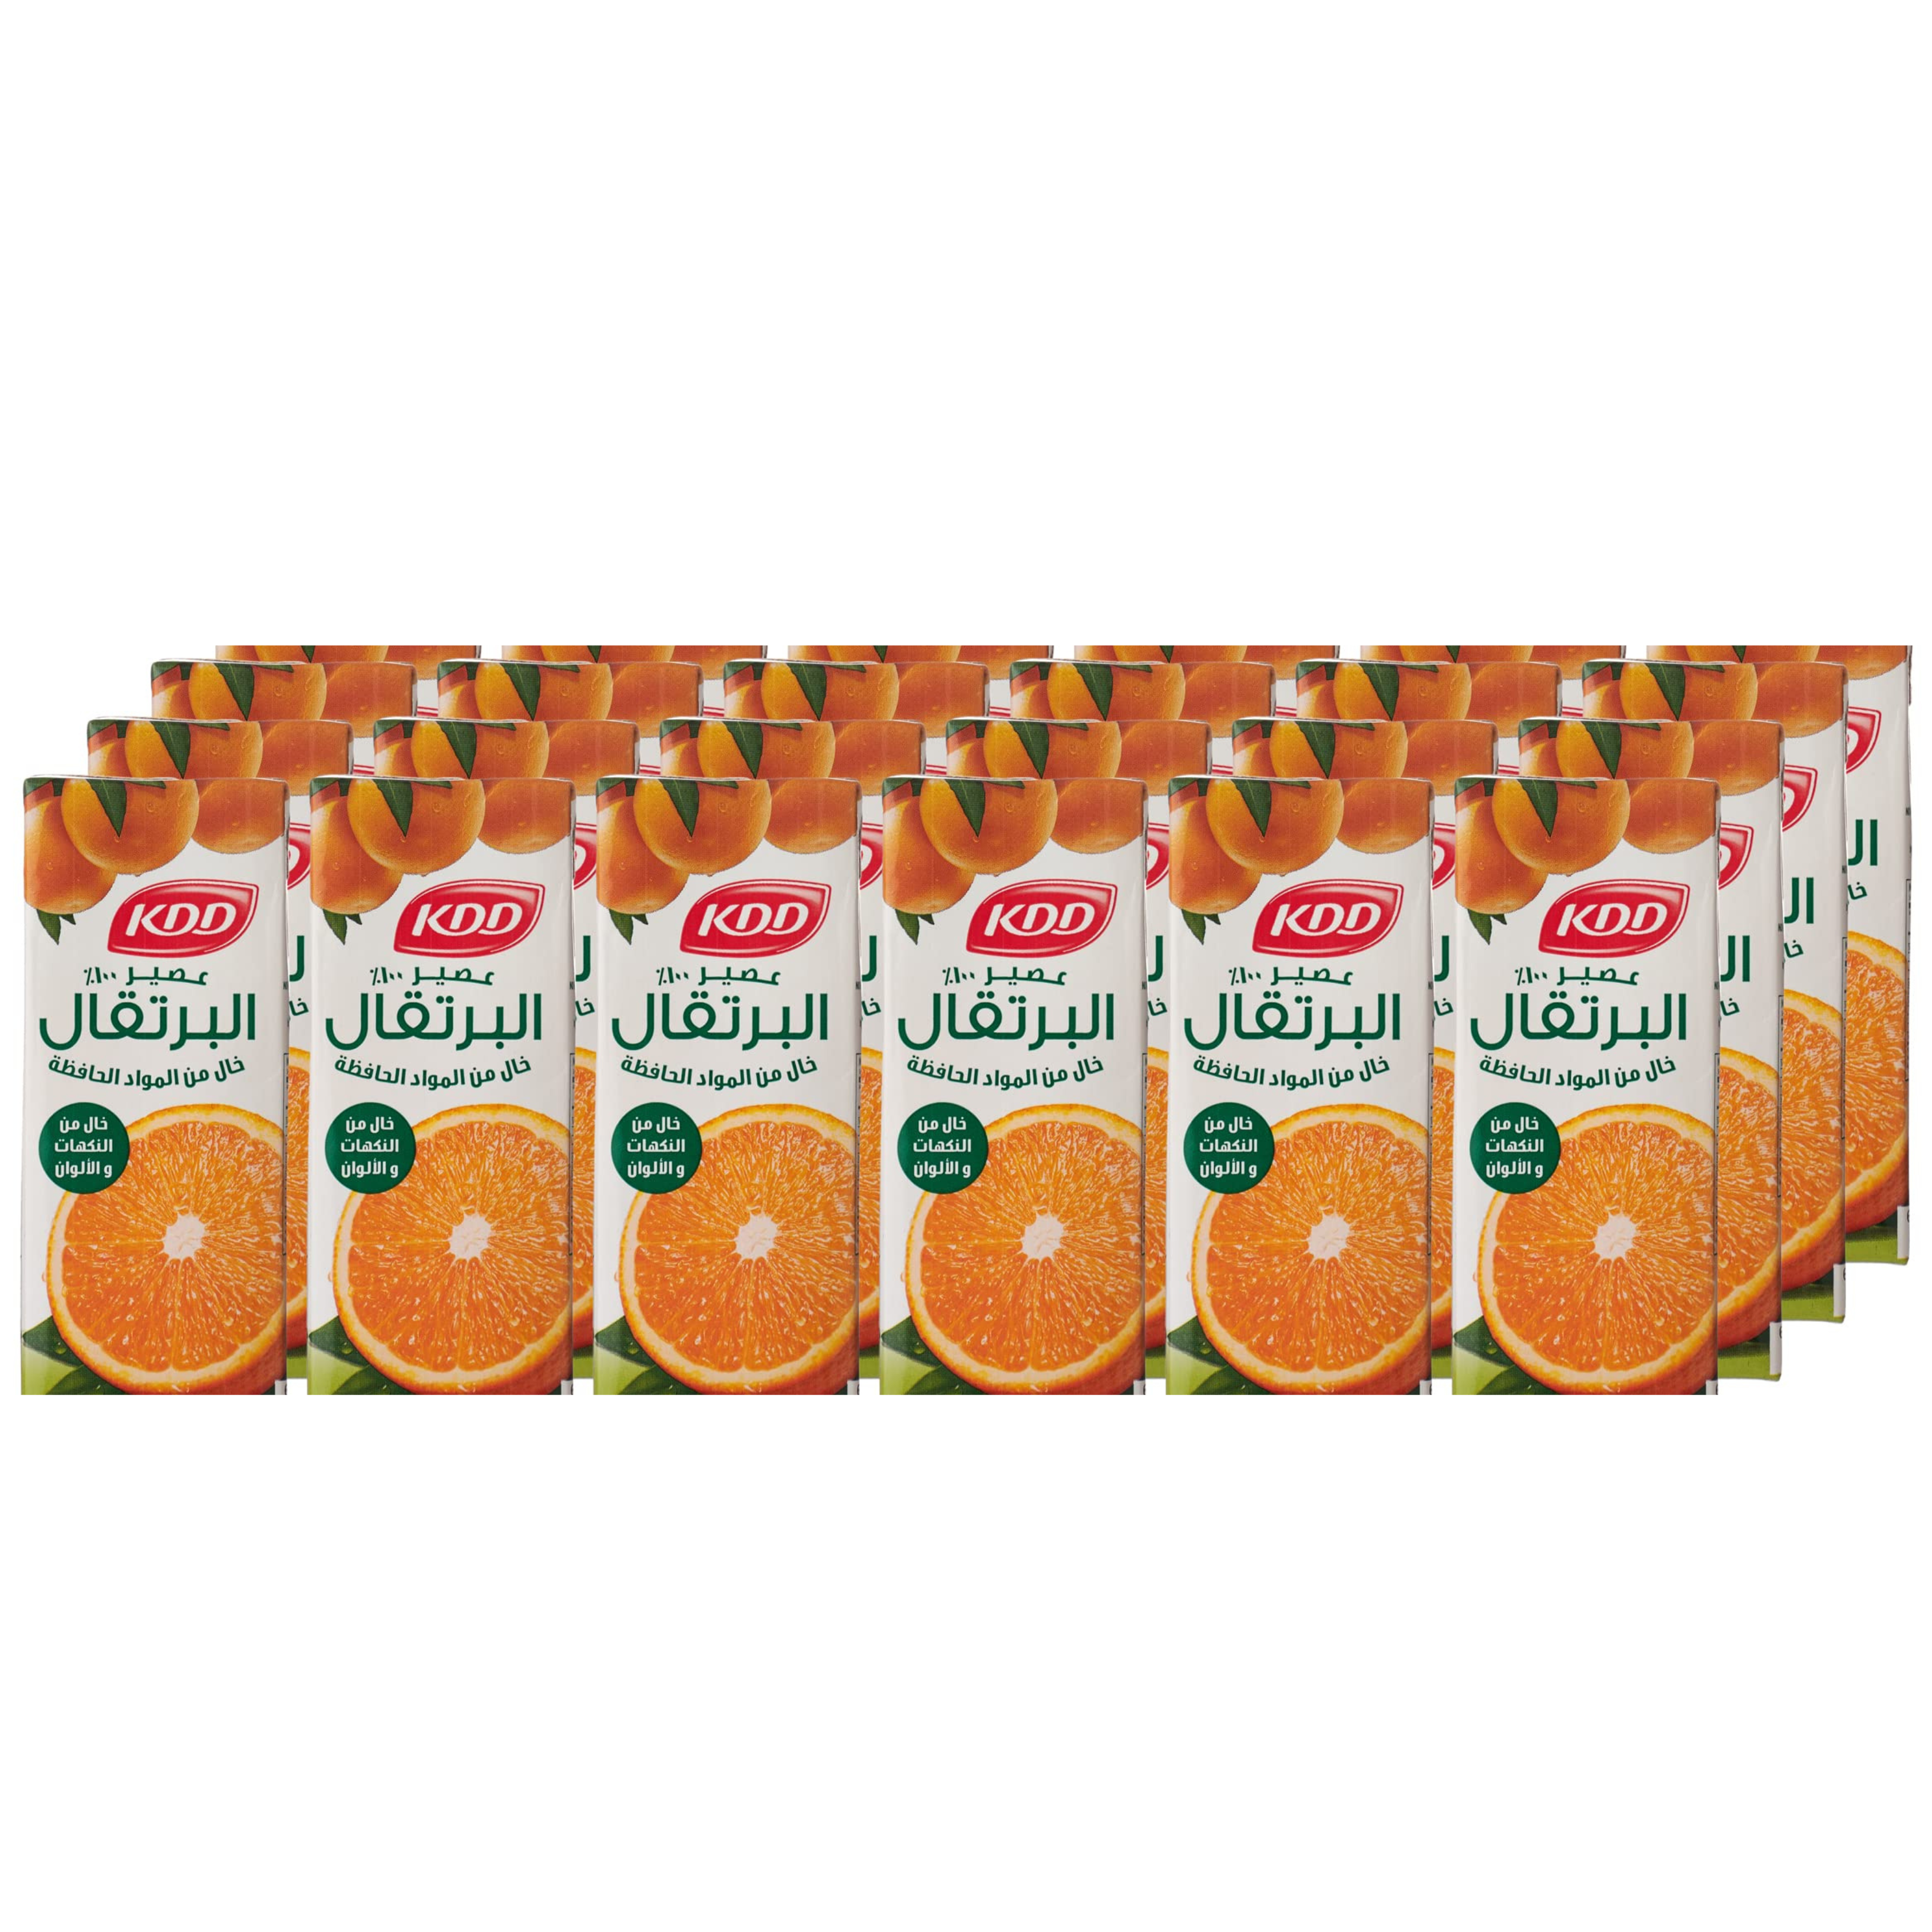 Kdd Natural Orange Juice, 24 X 180 ml- Pack of 1